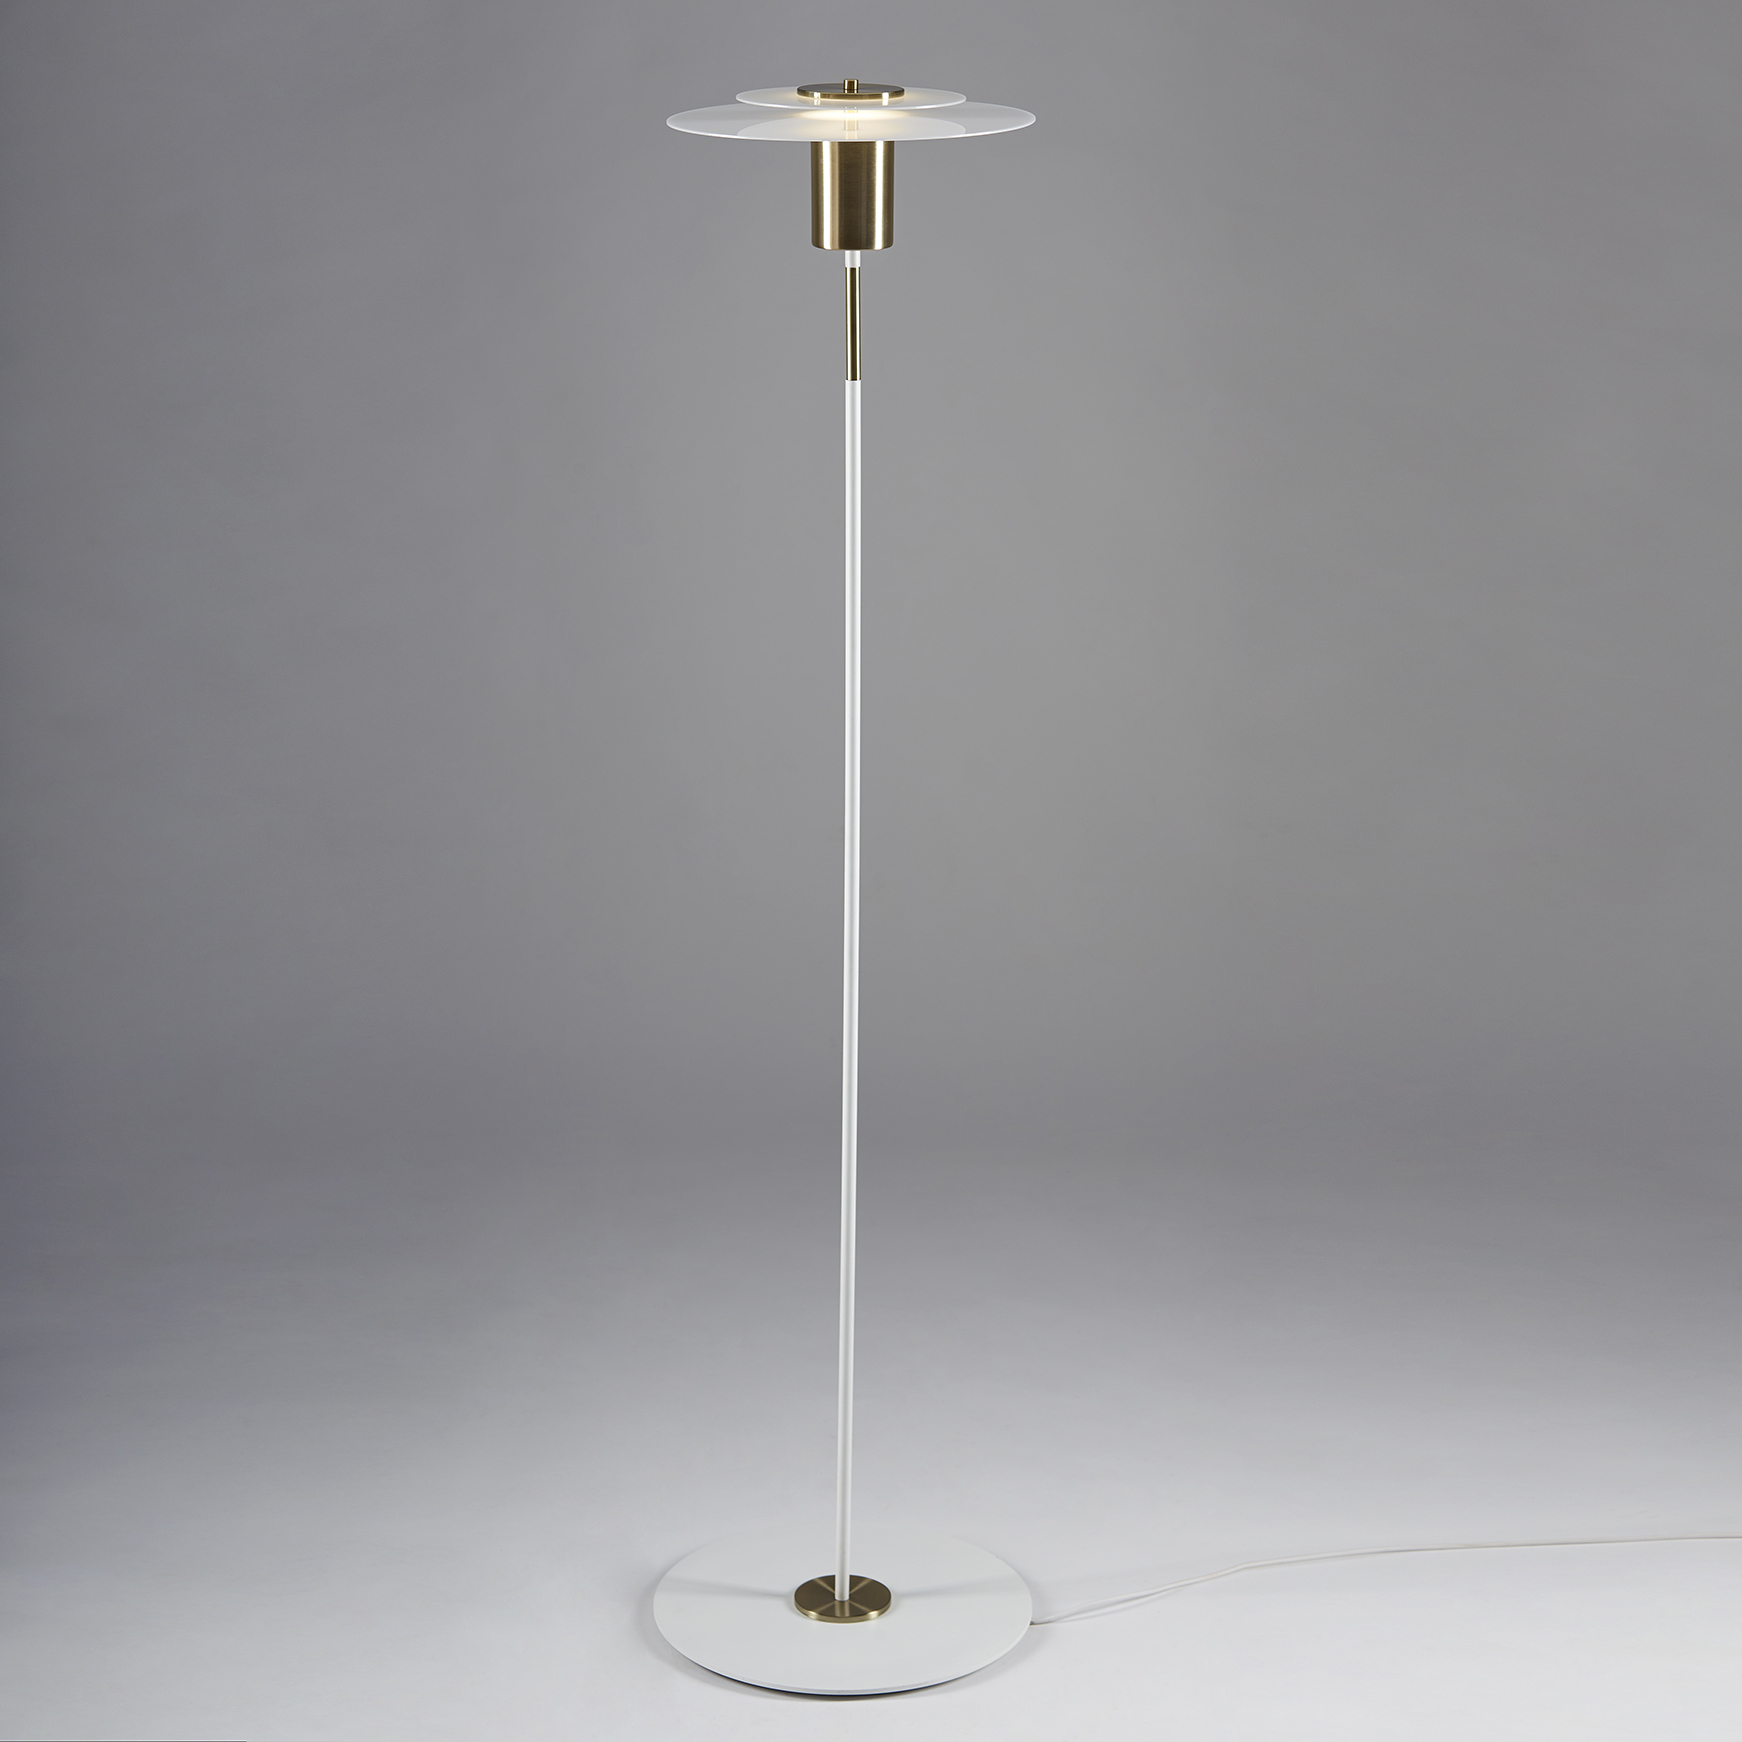 Lámpara de pie Orbit Lungo. Luminaria fabricada en acrílico y hierro, estilo moderno, con LED integrado y disponible en dos colores: bronce y plátil.